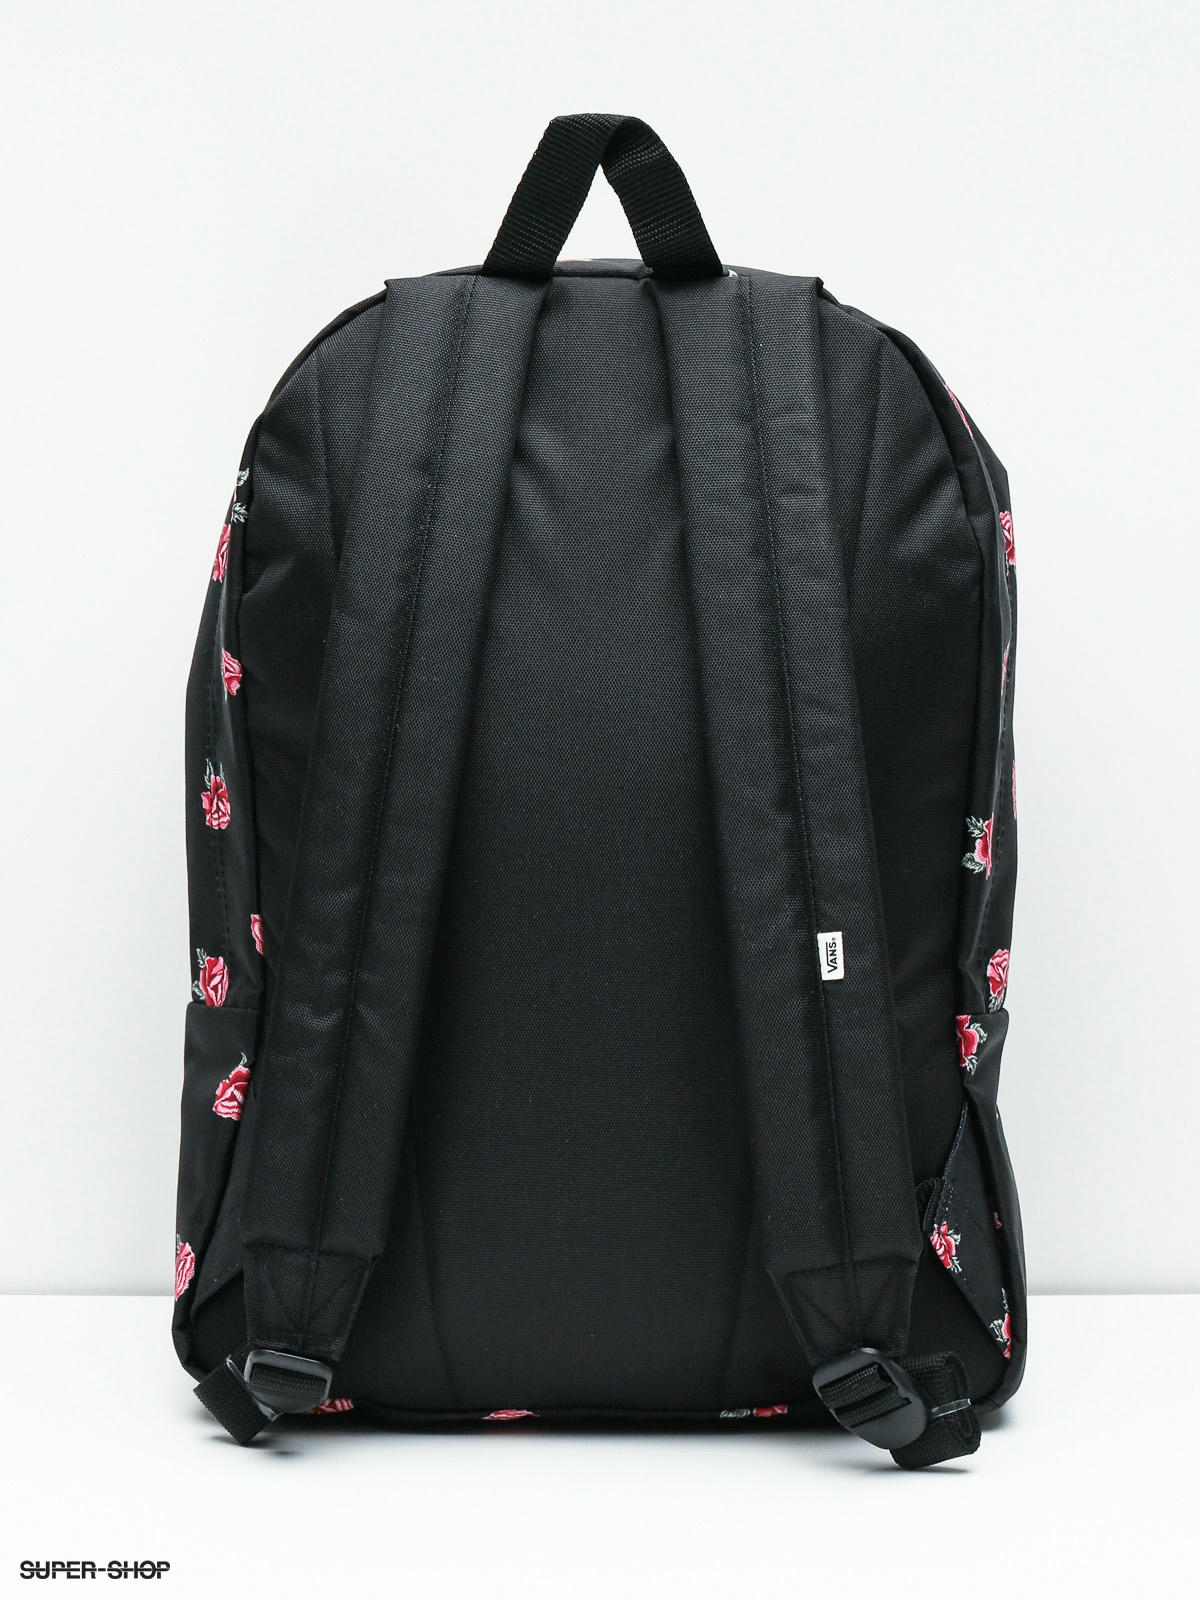 realm backpack black rose